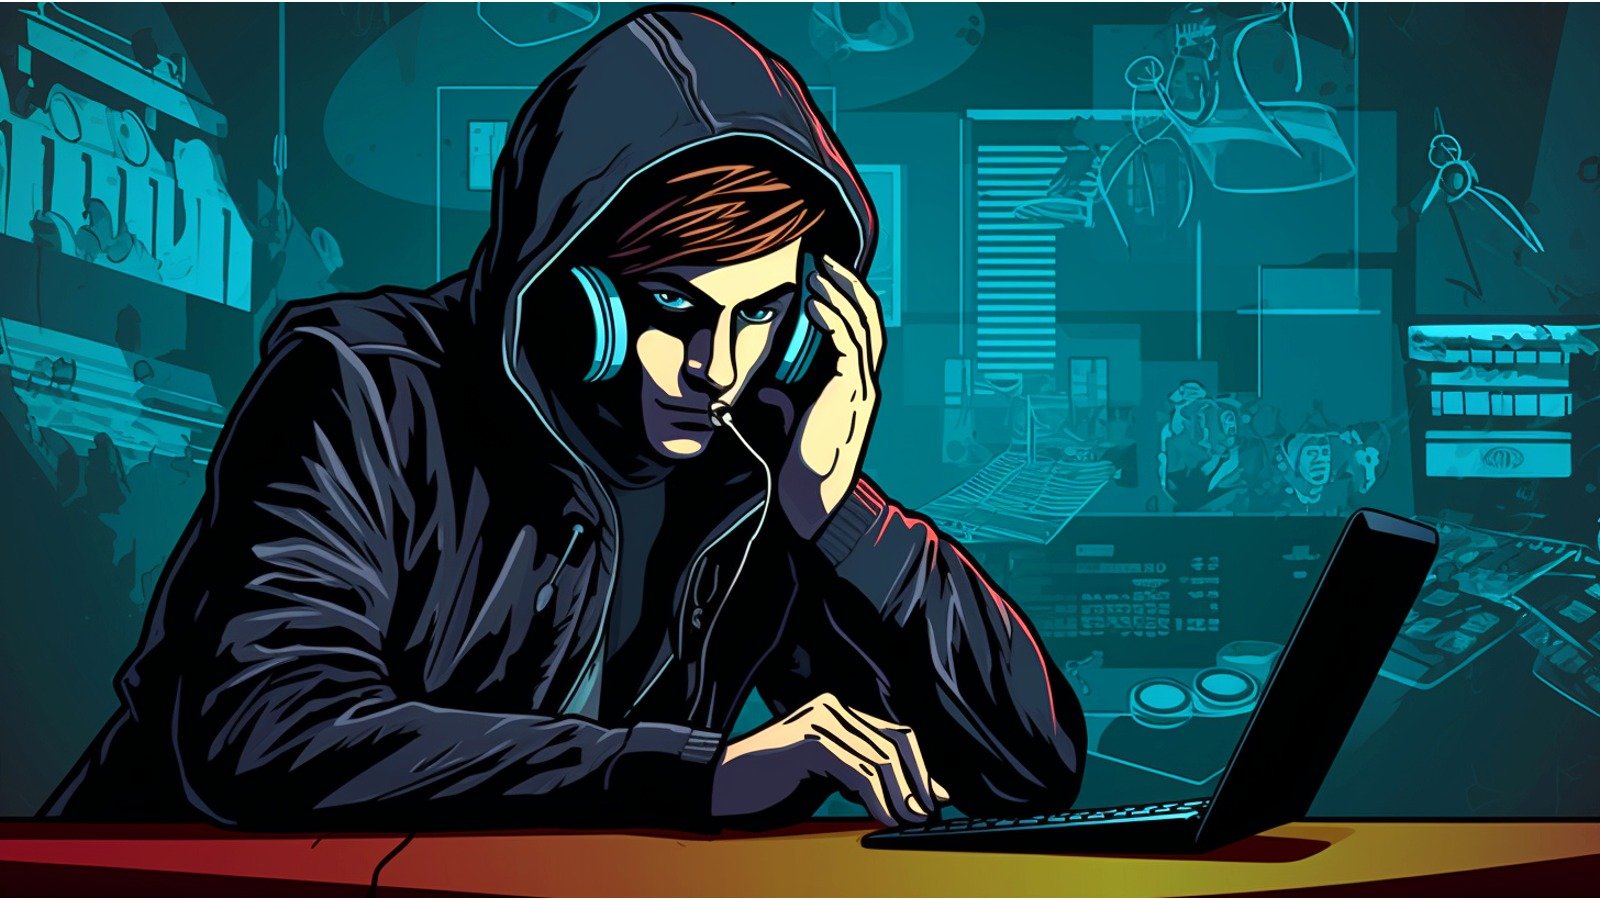 FBI Warns of Surge in ‘Phantom Hacker’ Scams Impacting Elderly